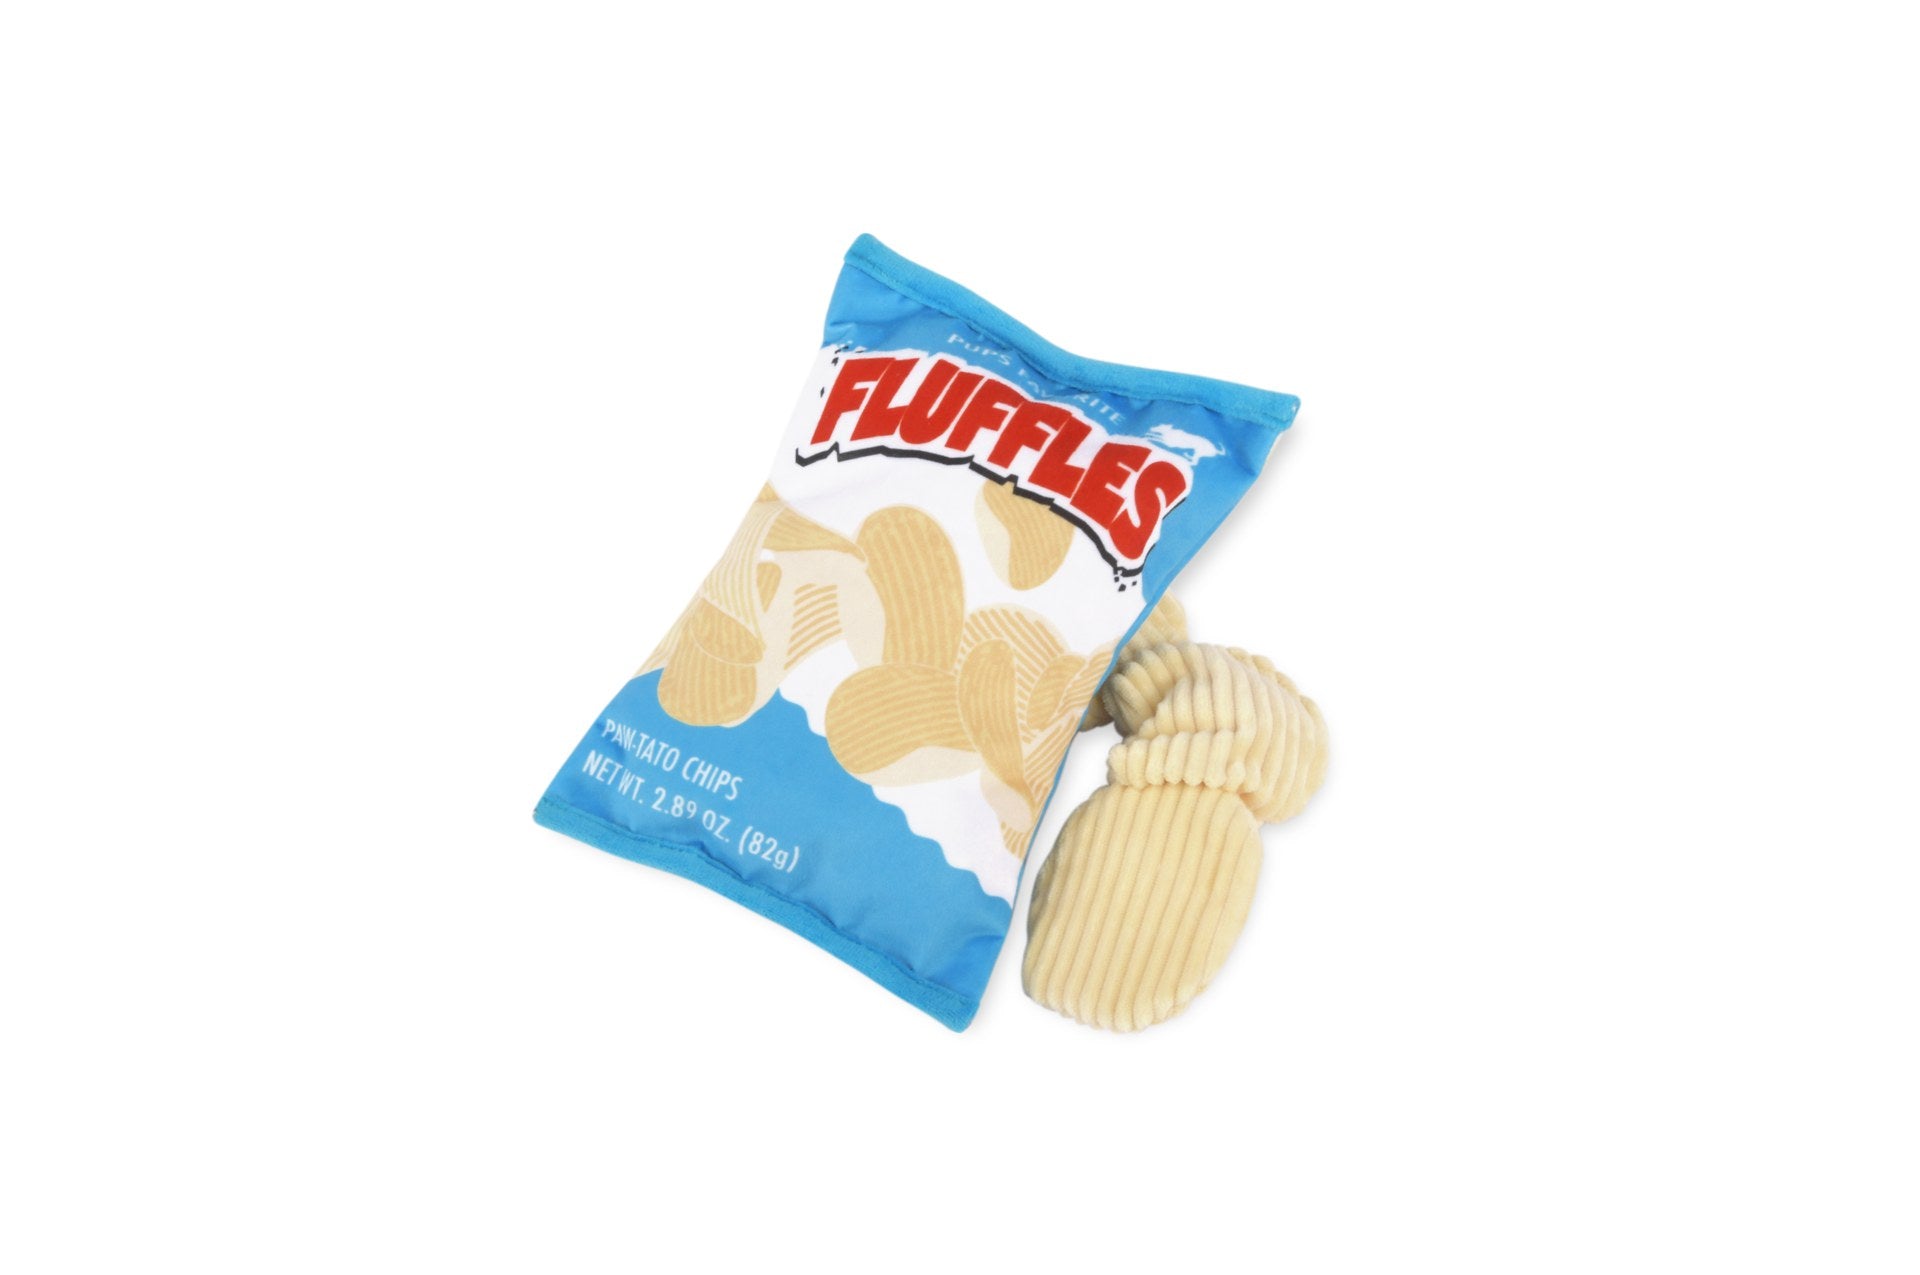 Snack Attack - Fluffles Chips